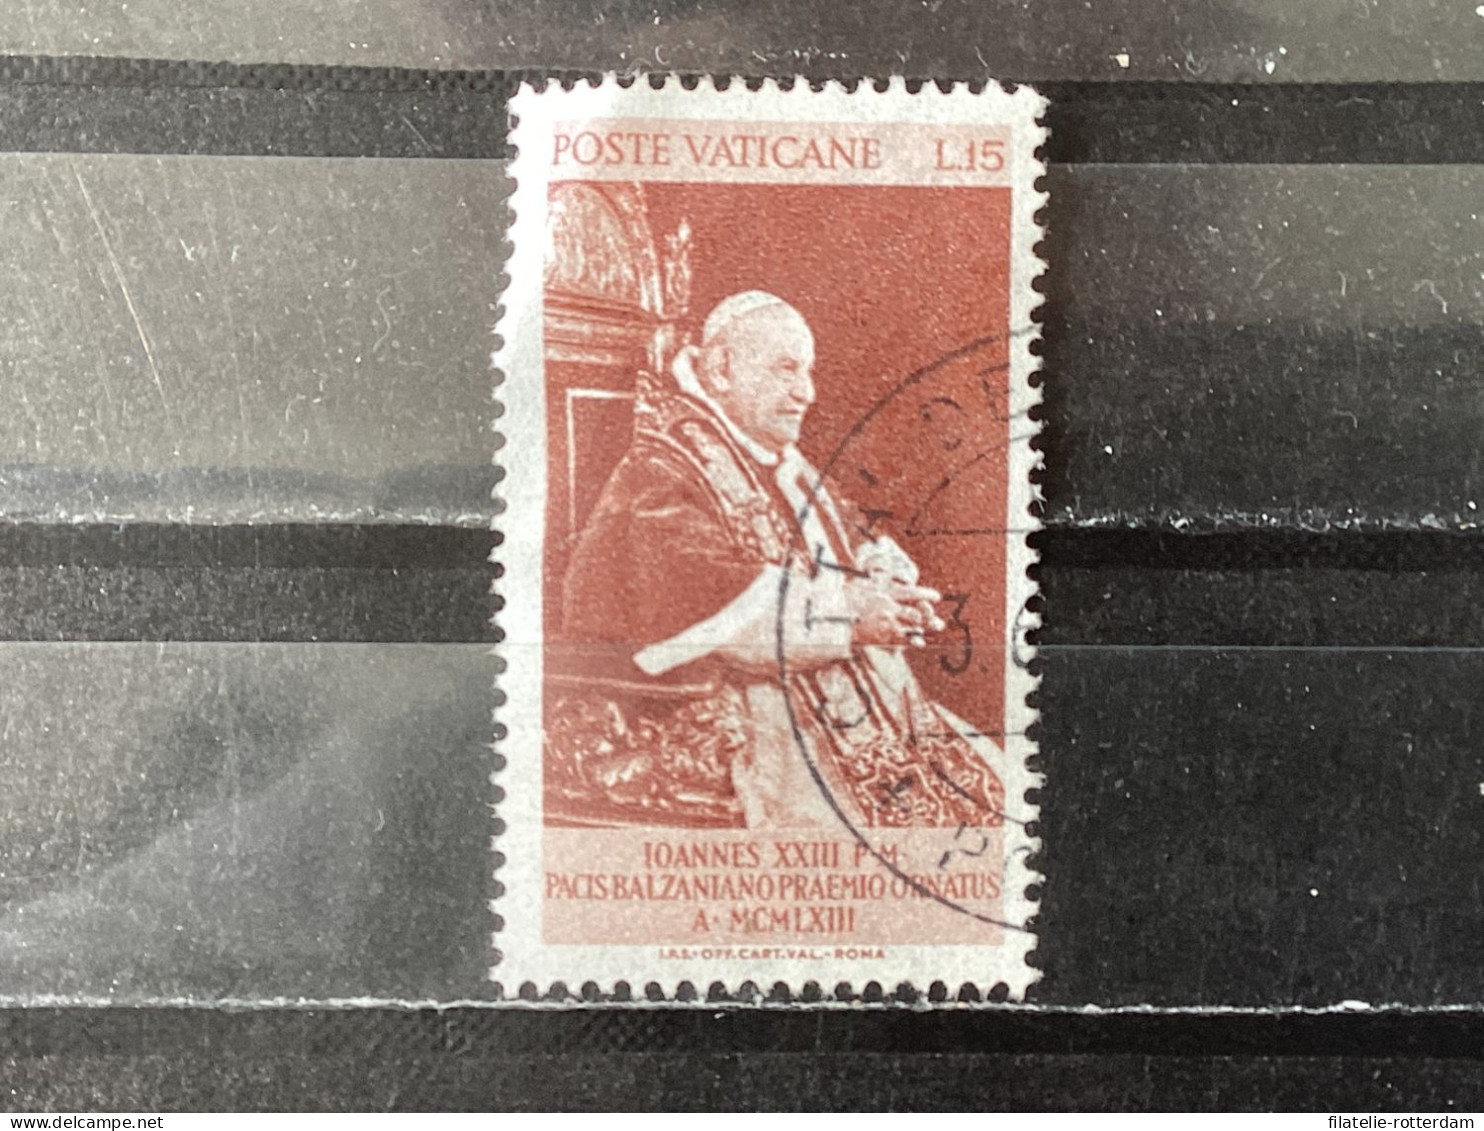 Vatican City / Vaticaanstad - Balzan Price For Peace (15) 1963 - Gebruikt